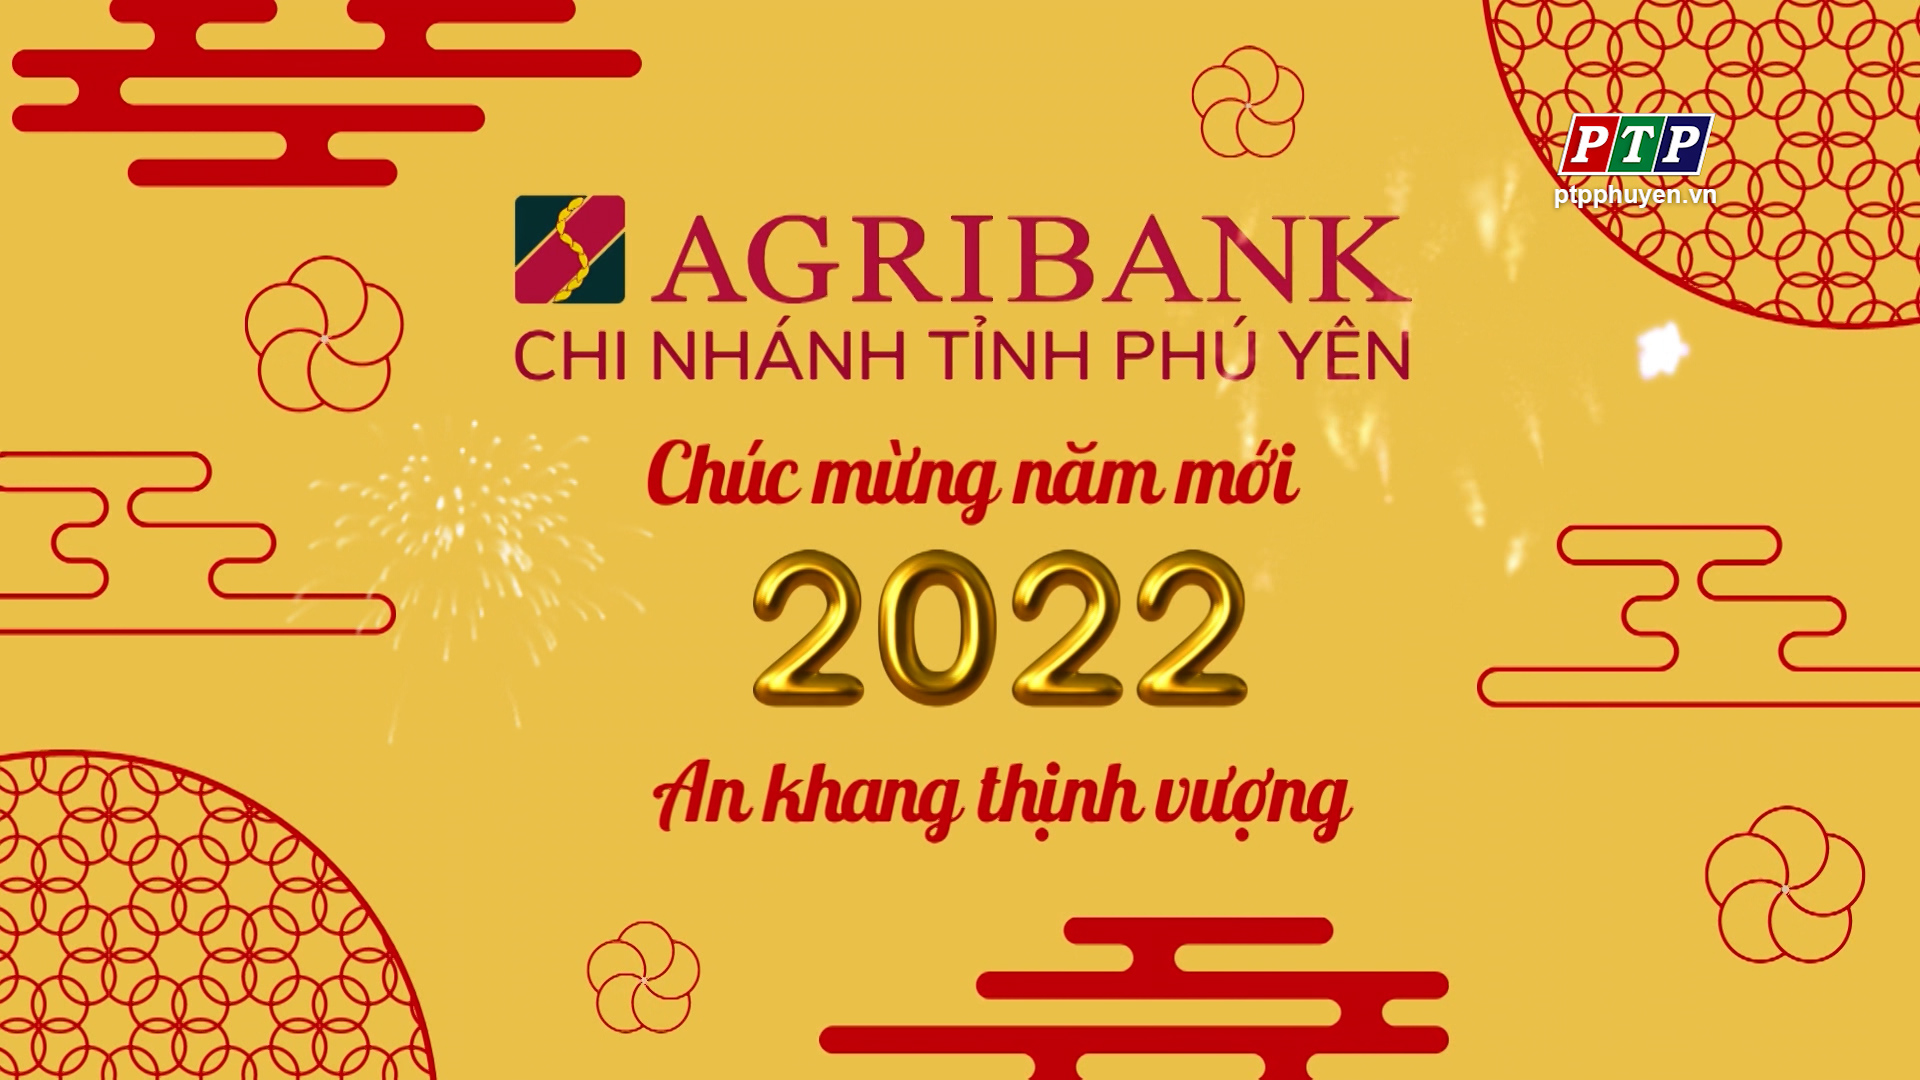 AGRIBANK CN Phú Yên Chúc Mừng Năm Mới